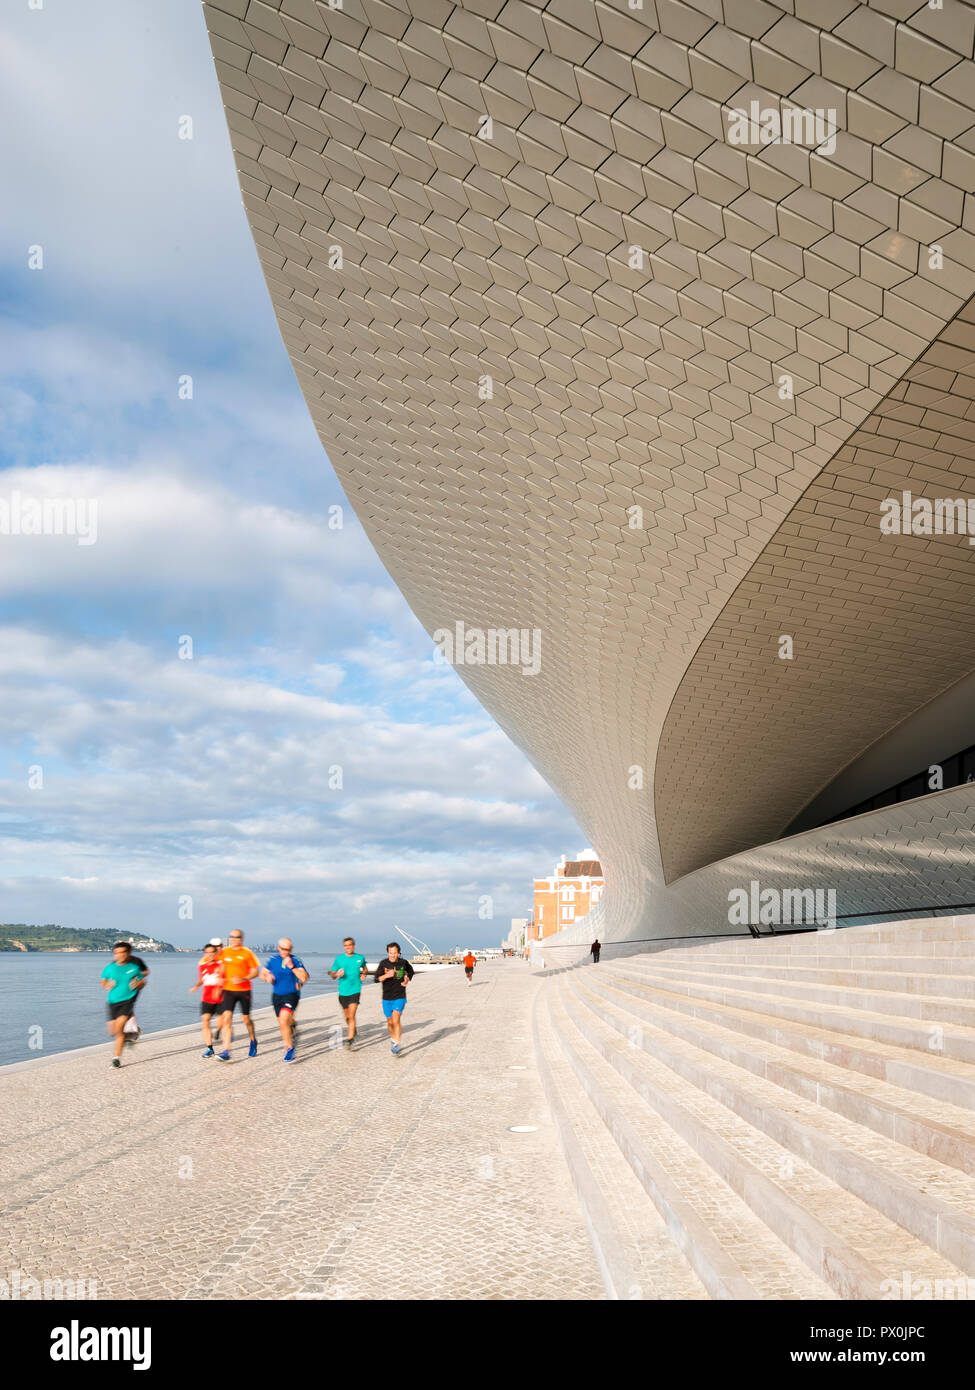 Vue extérieure de la MAAT - Musée d'art, d'architecture et de la Technologie, Lisbonne, Portugal. Groupe de coureurs sur les étapes d'une terrasse. Banque D'Images